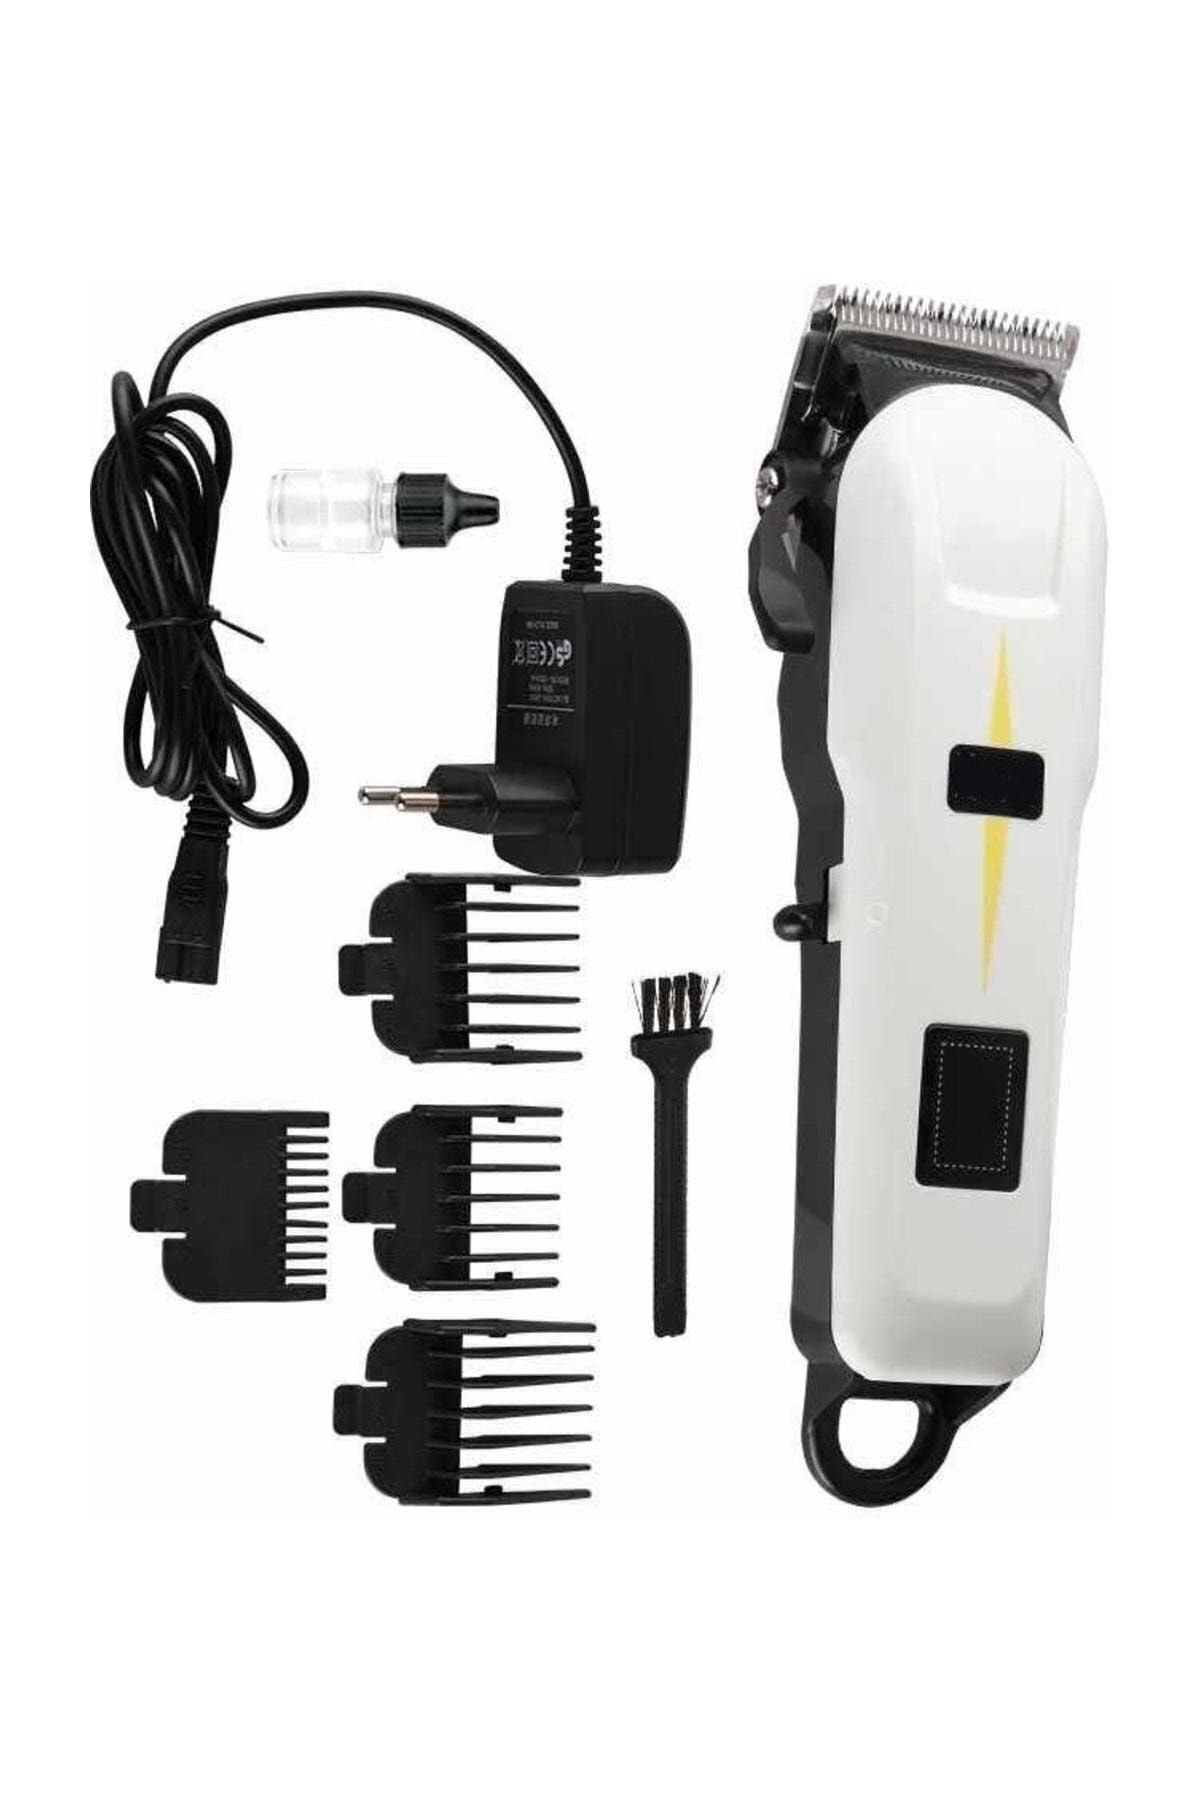 Dearling Dijital Göstergeli Professional Model Ultra Güçlü Saç Sakal Tıraş Makinesi Kablolu Kablosuz Kullanım